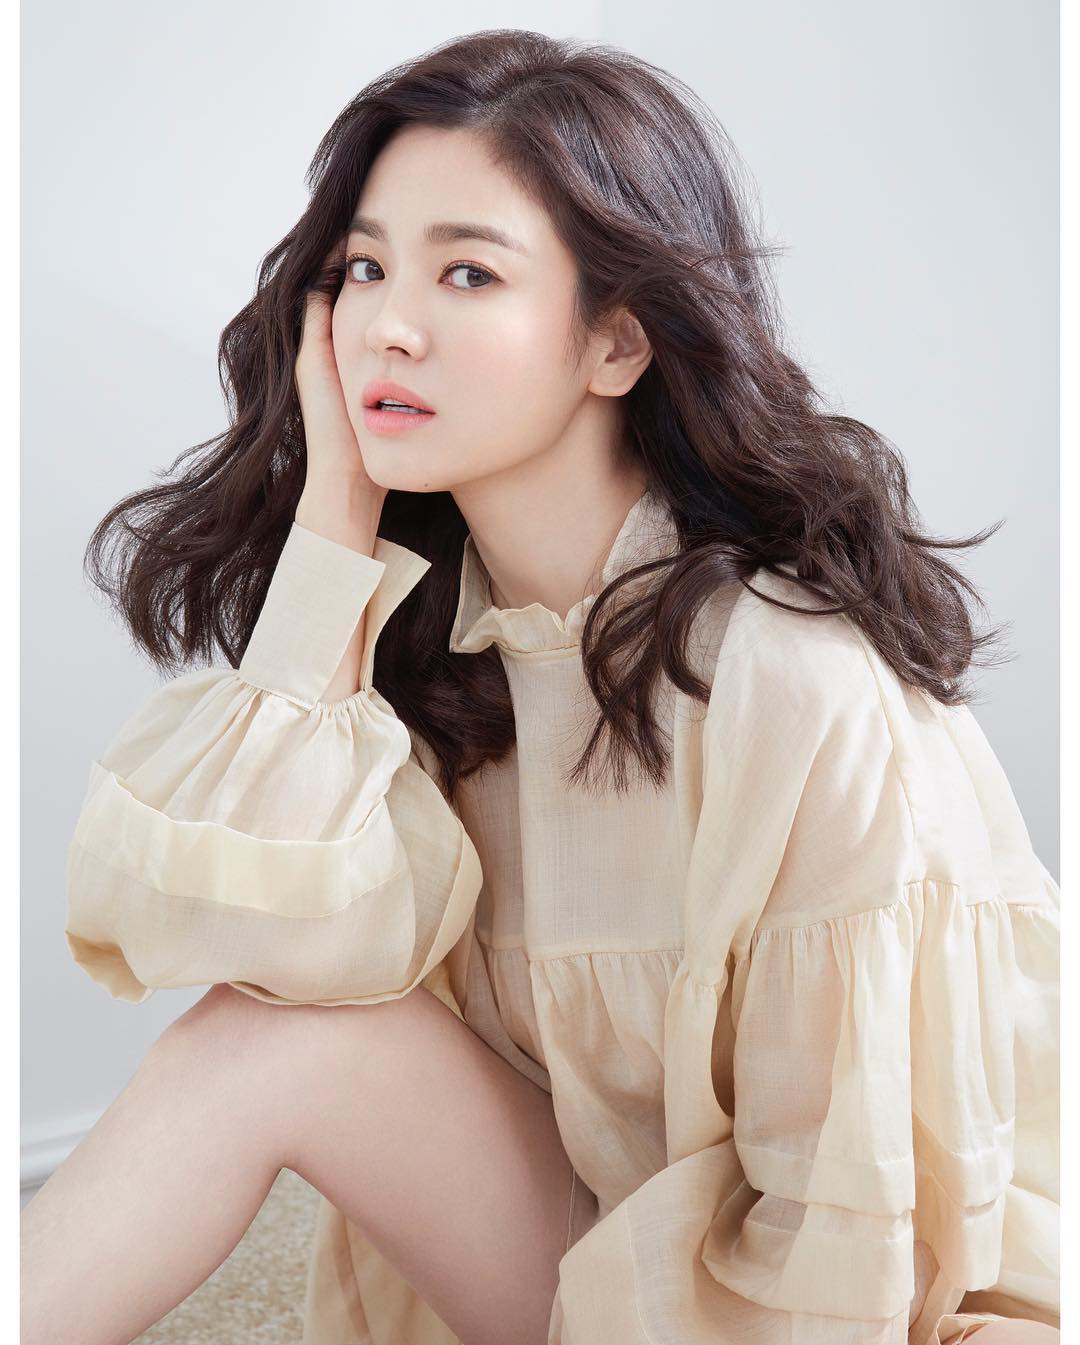 Song Hye kyo South korean actress 11